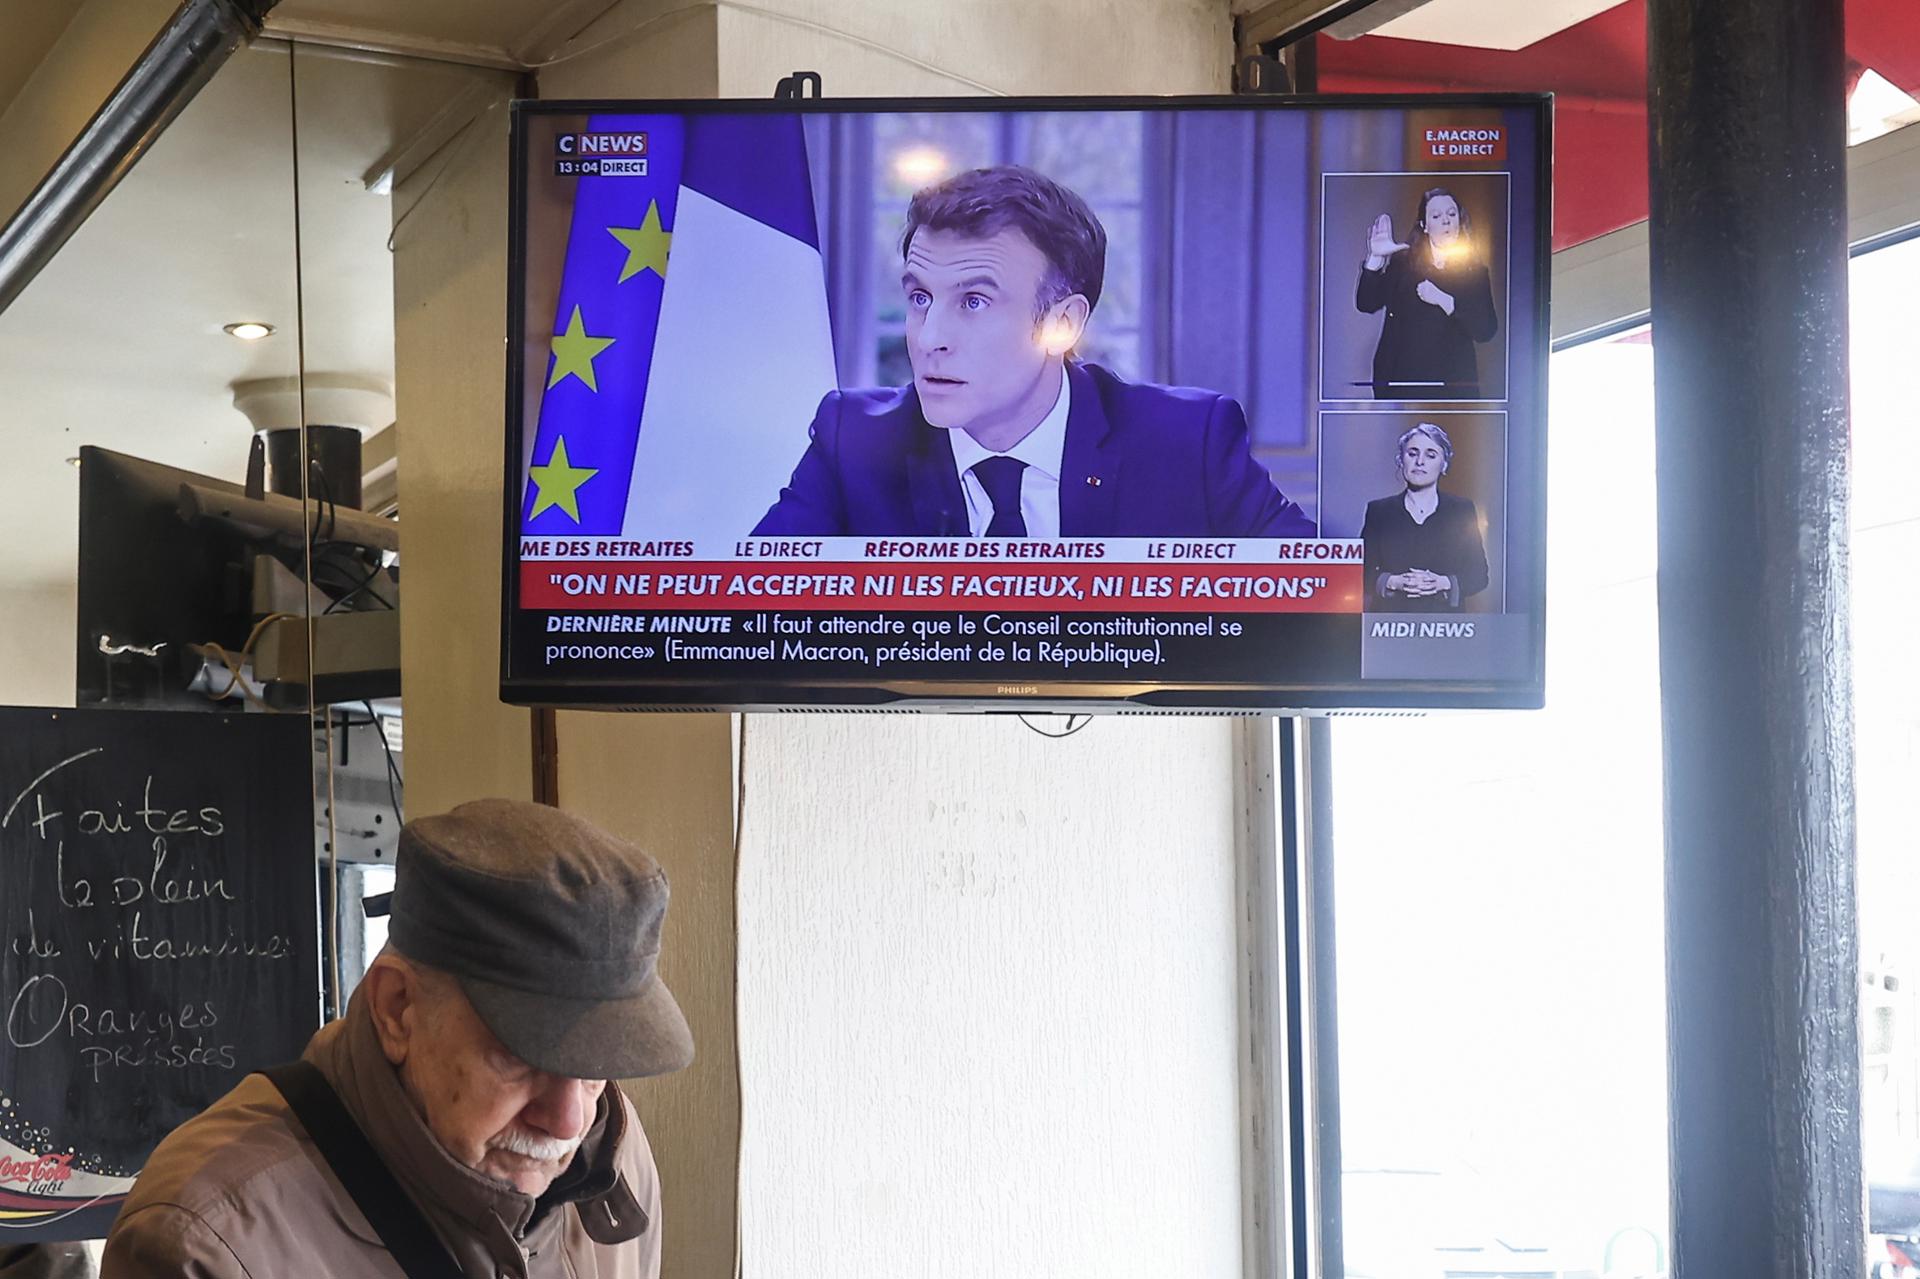 El presidente Emmanuel Macron ofrece una entrevista a las dos principales cadenas de televisión de Francia.